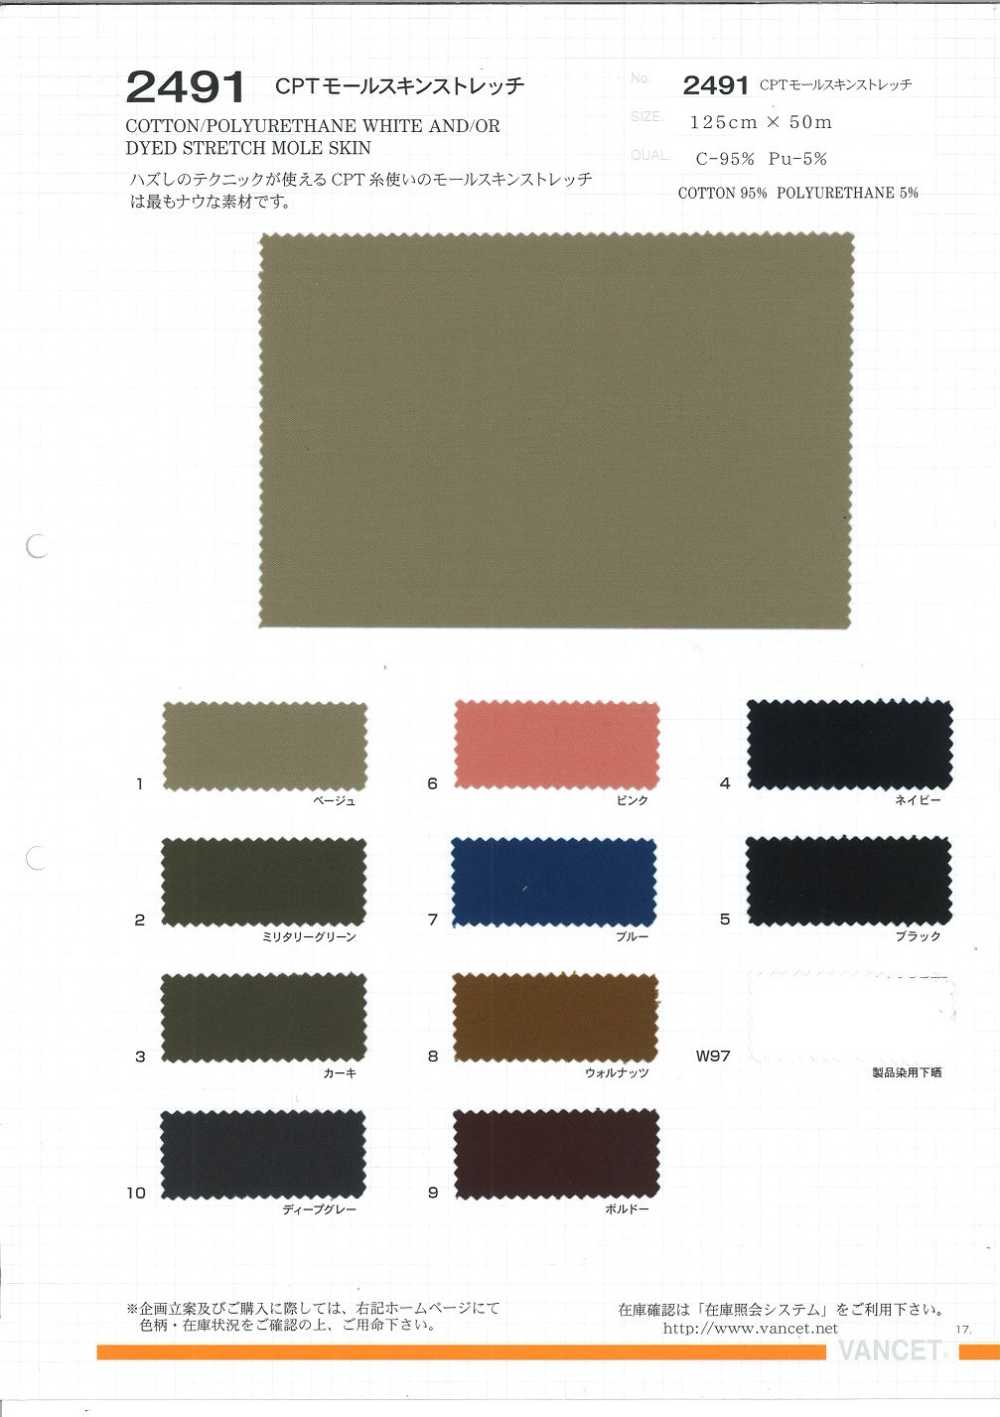 2491 Estiramiento CPT Moleskin[Fabrica Textil] VANCET